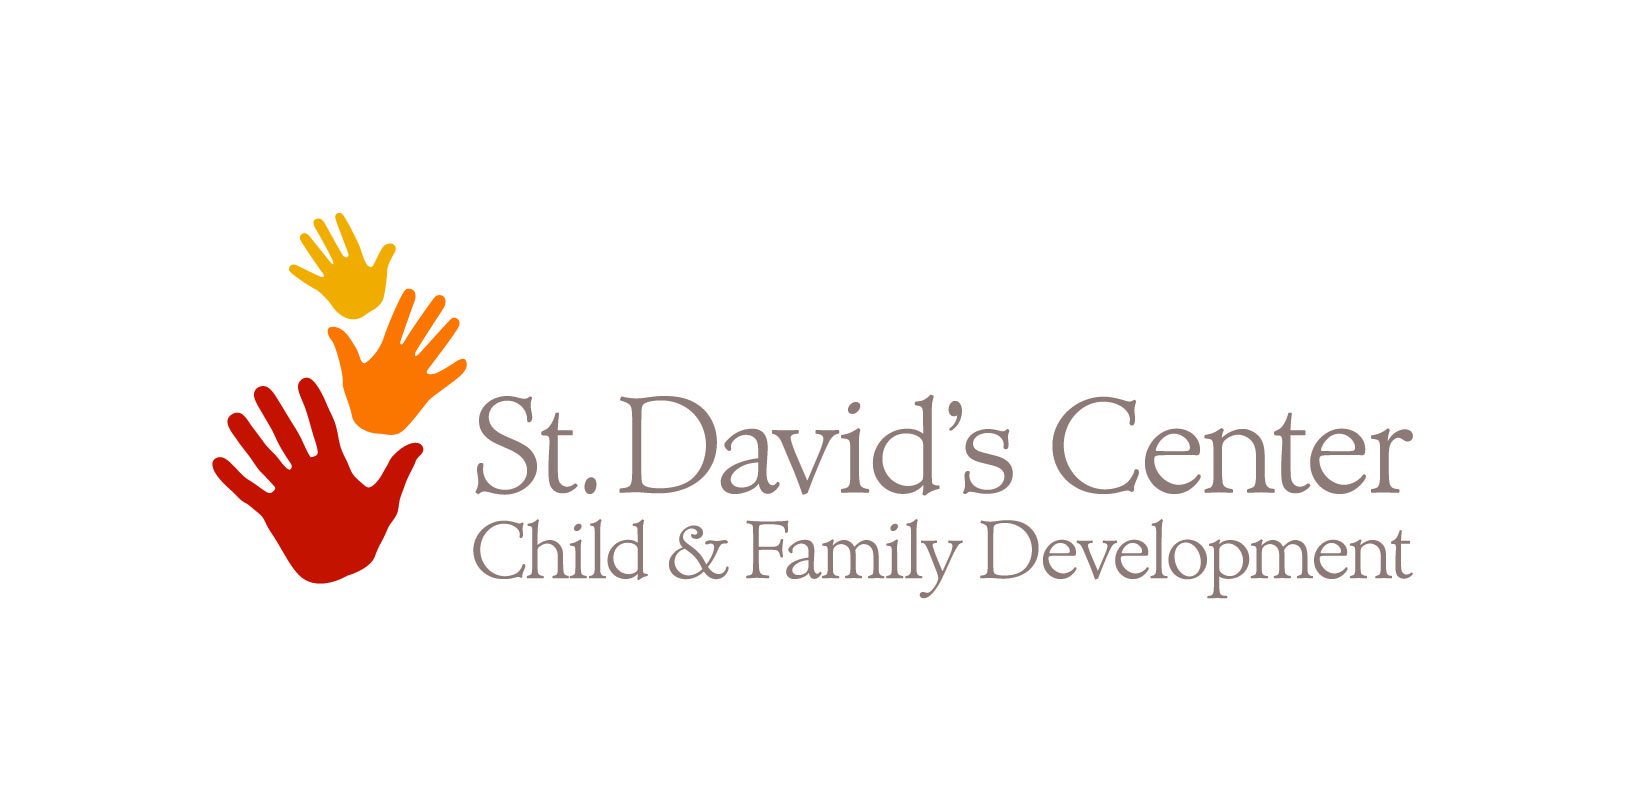 St. David's Center for Child & Family Development